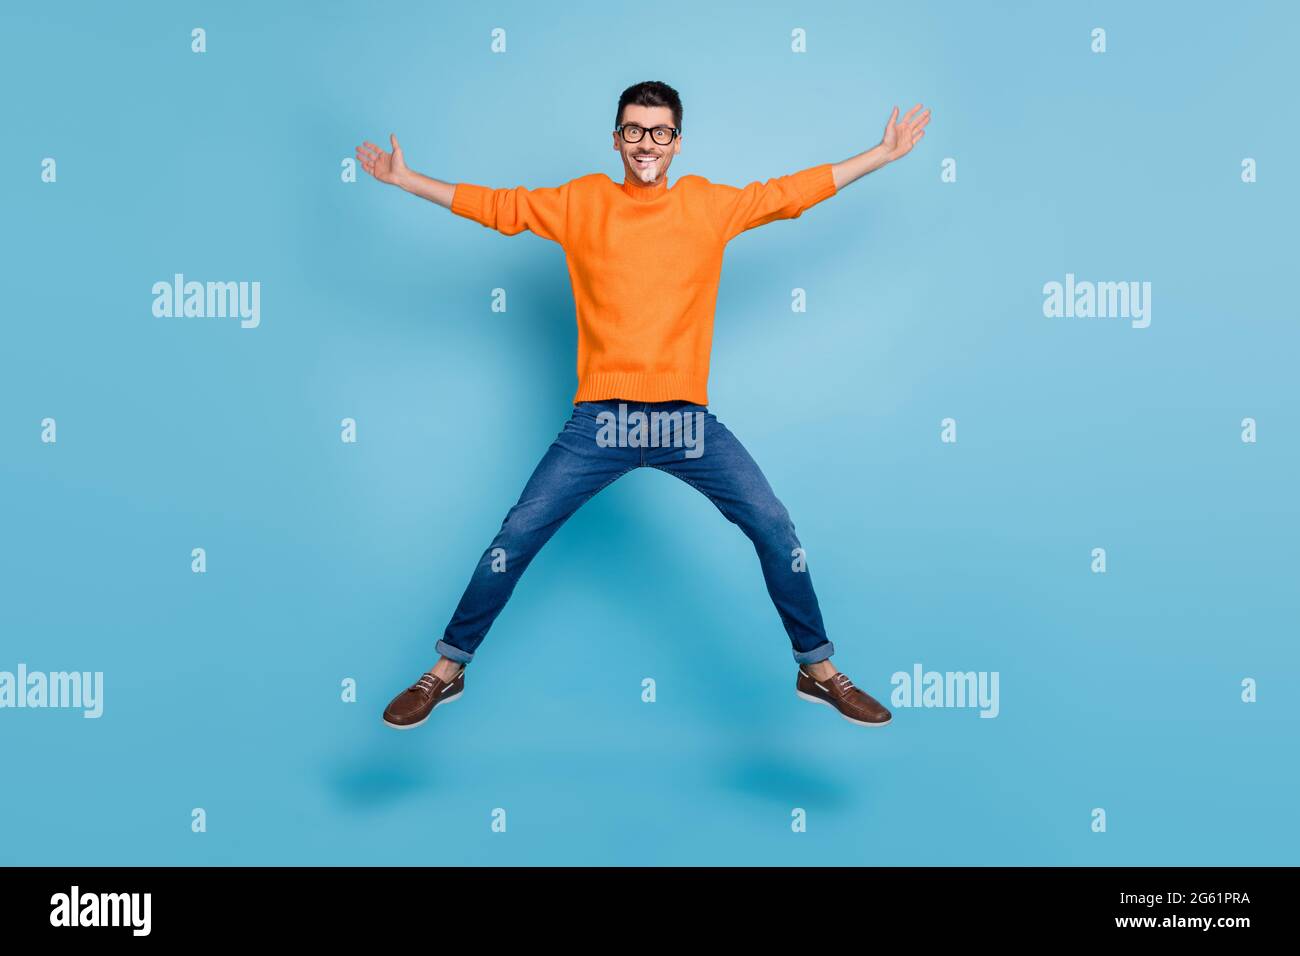 Foto a lunghezza intera di persona allegra che salta in alto divertirsi fare figura stella isolato su sfondo blu Foto Stock